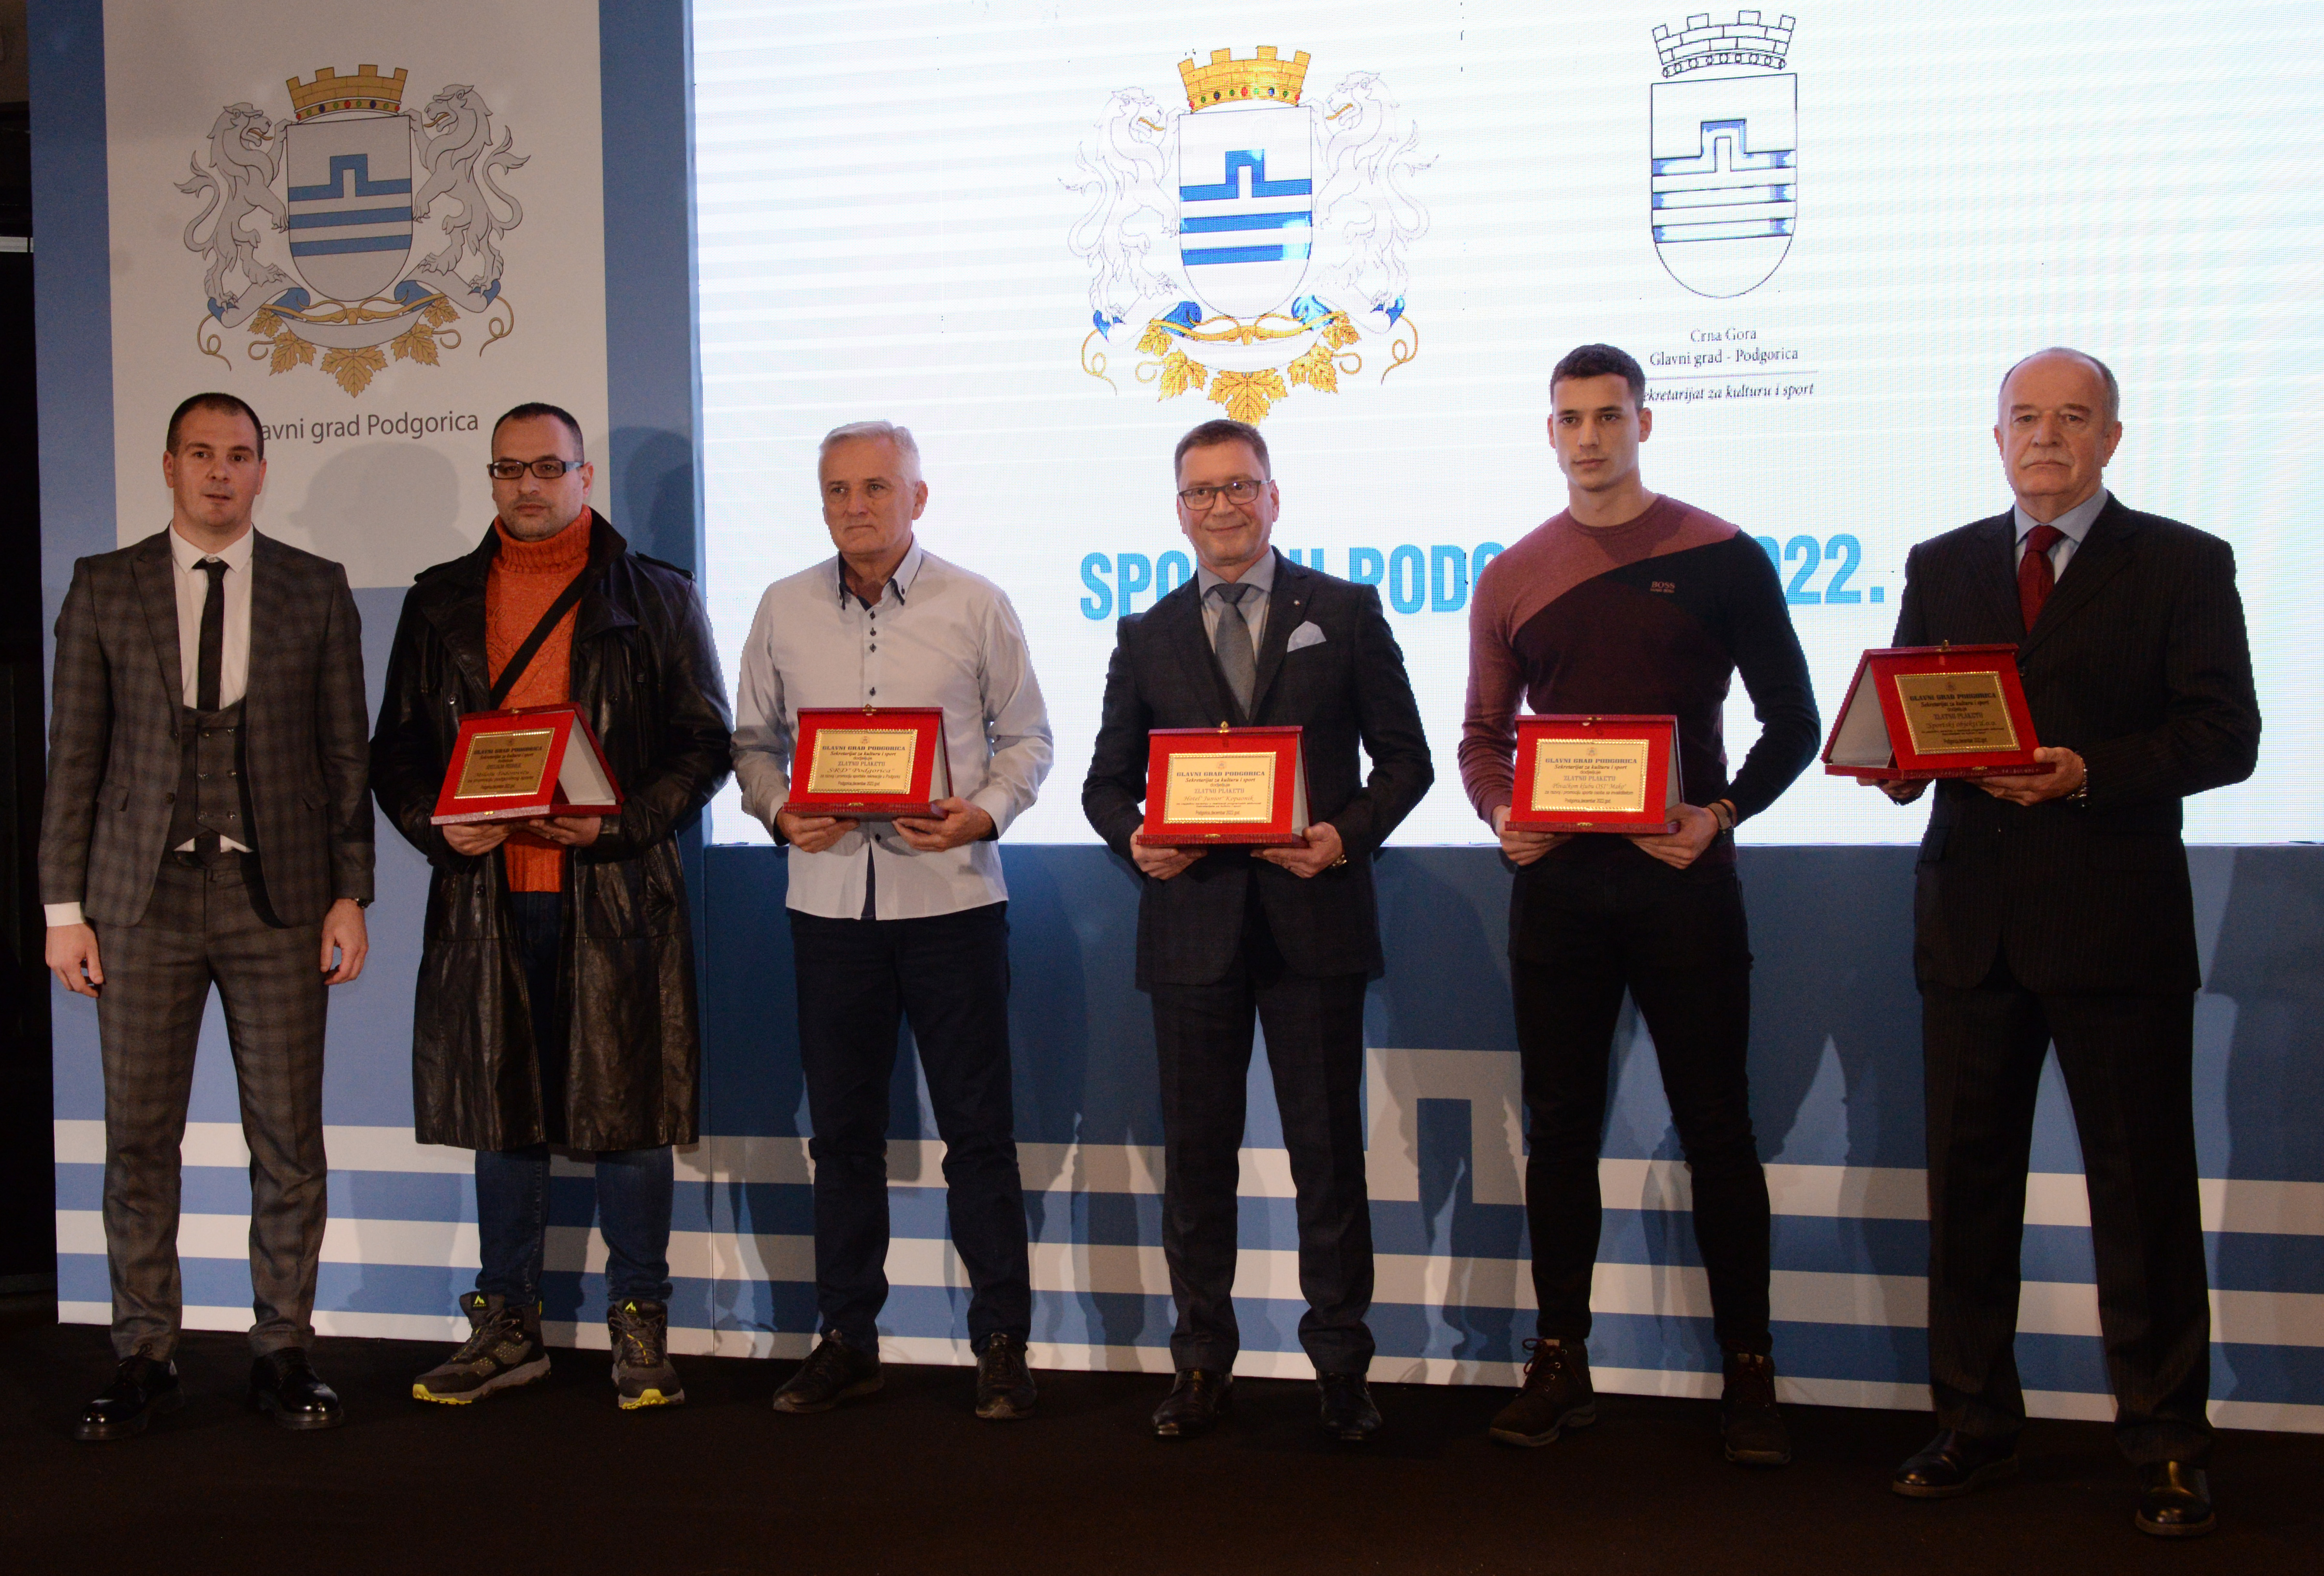 Uručena priznanja najboljim sportistima Podgorice; Vuković: Sportska 2022. jedna od najuspješnijih godina u modernoj crnogorskoj istoriji